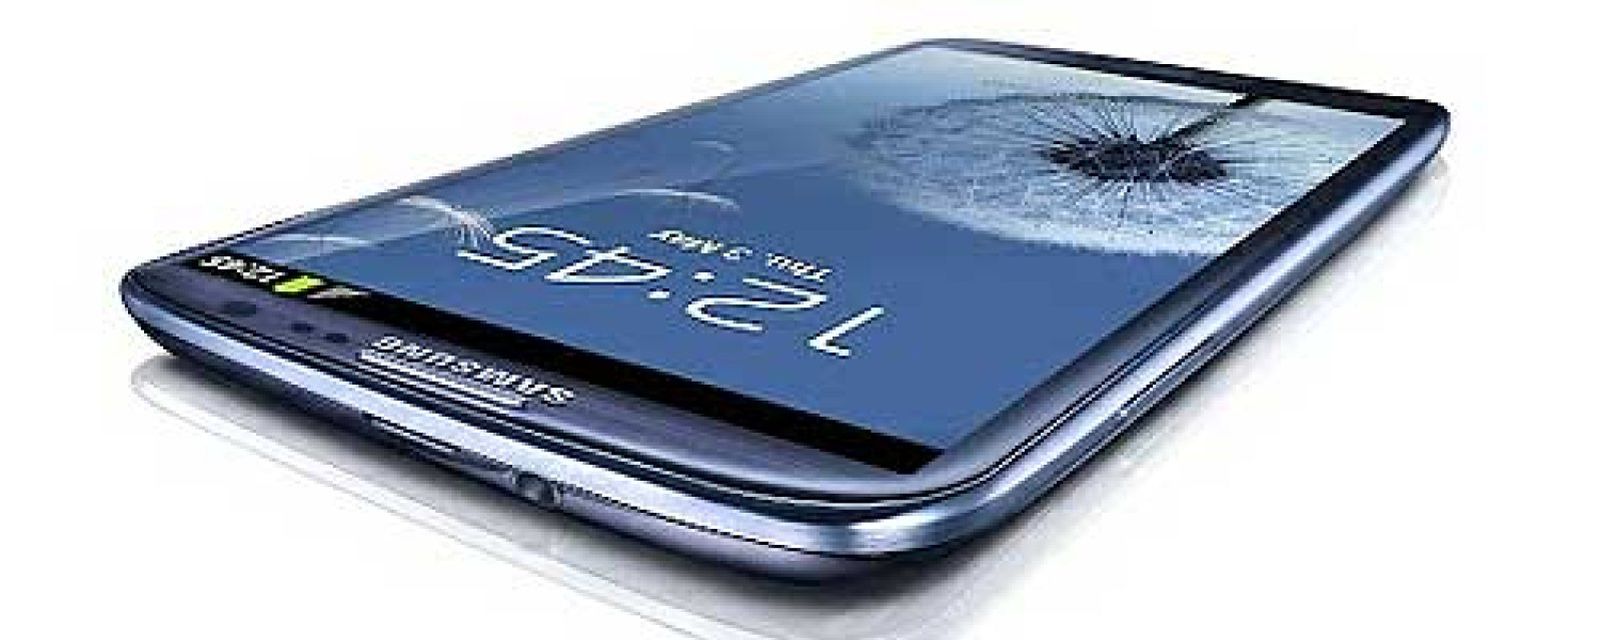 Foto: Samsung calienta motores y pide 9 millones de Galaxy SIII para acabar con Apple